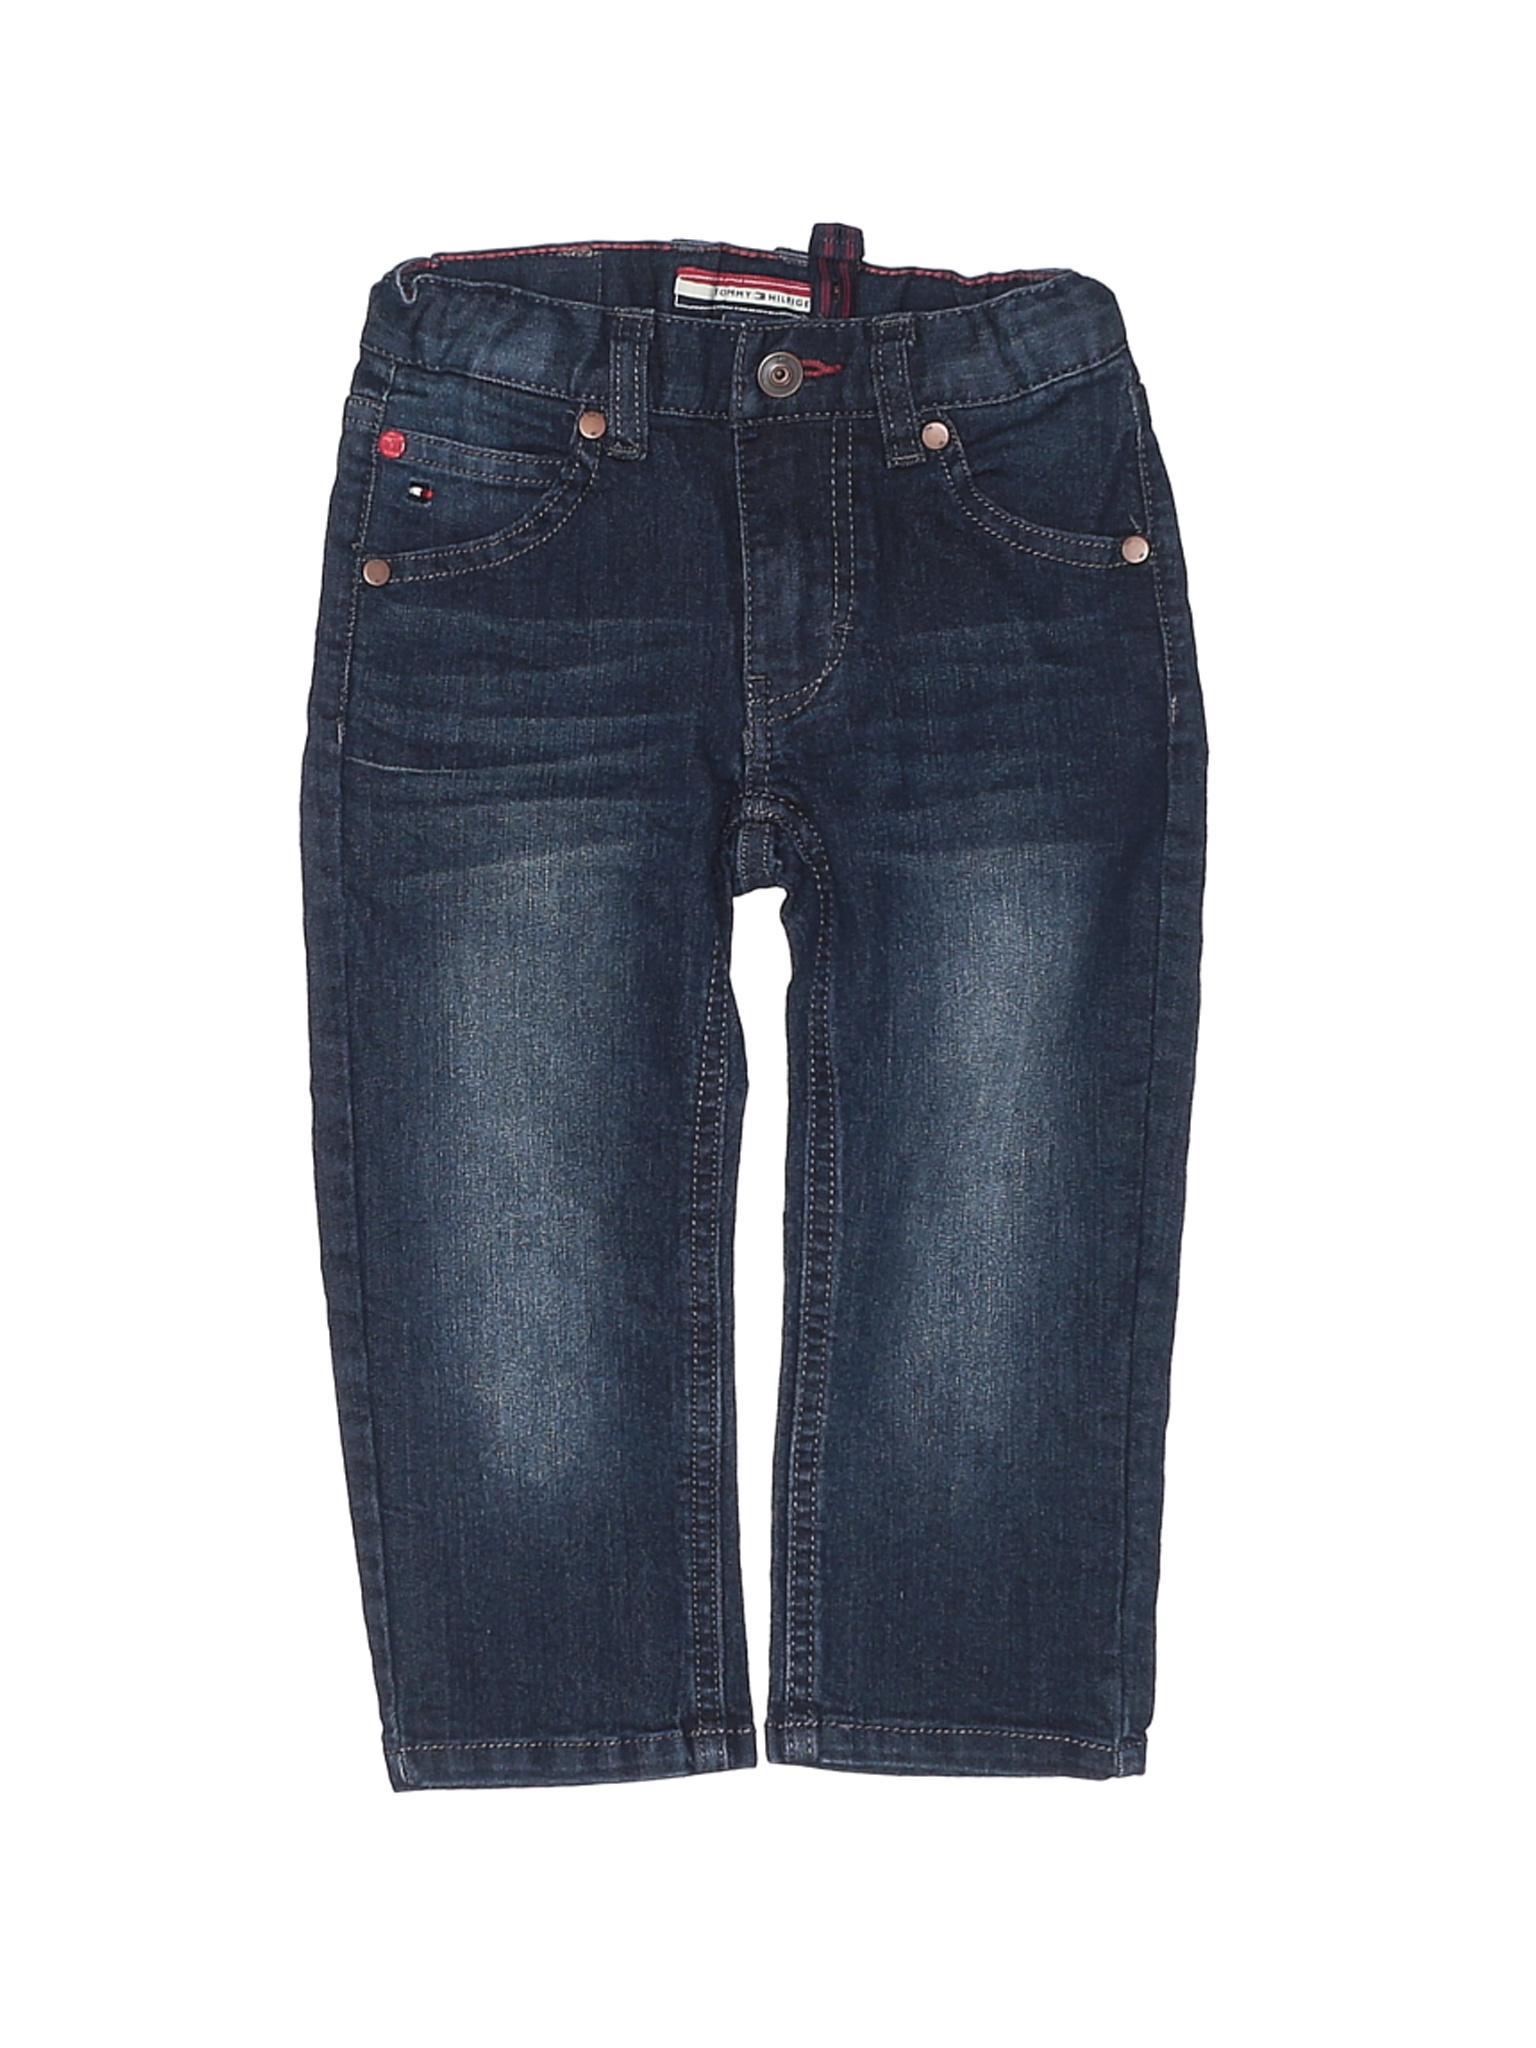 Tommy Hilfiger Boys Blue Jeans 2T | eBay